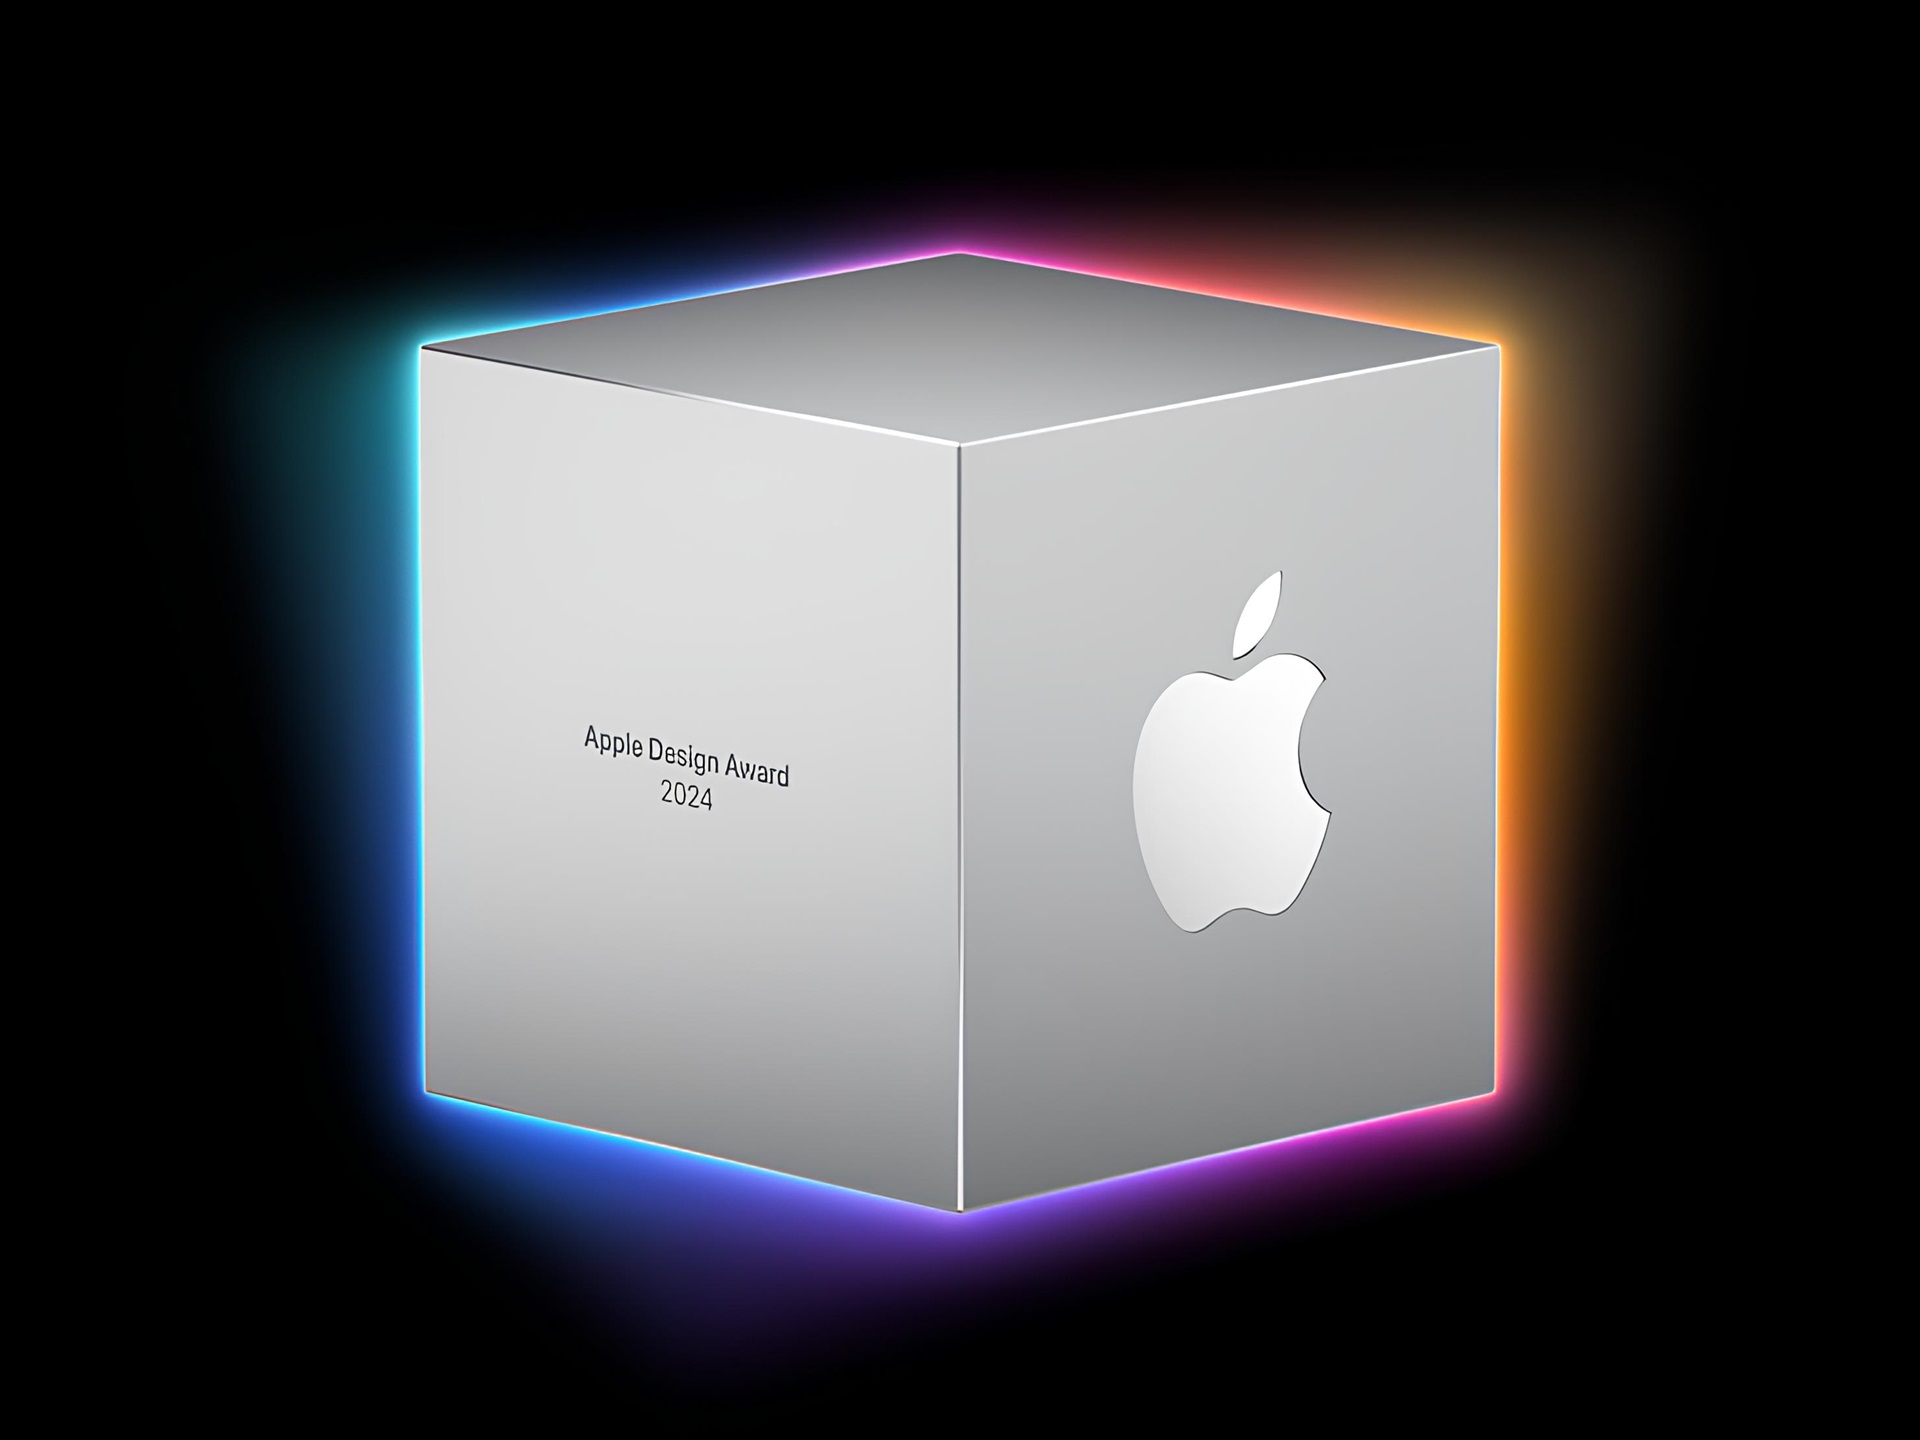 Apple Design Award 2024